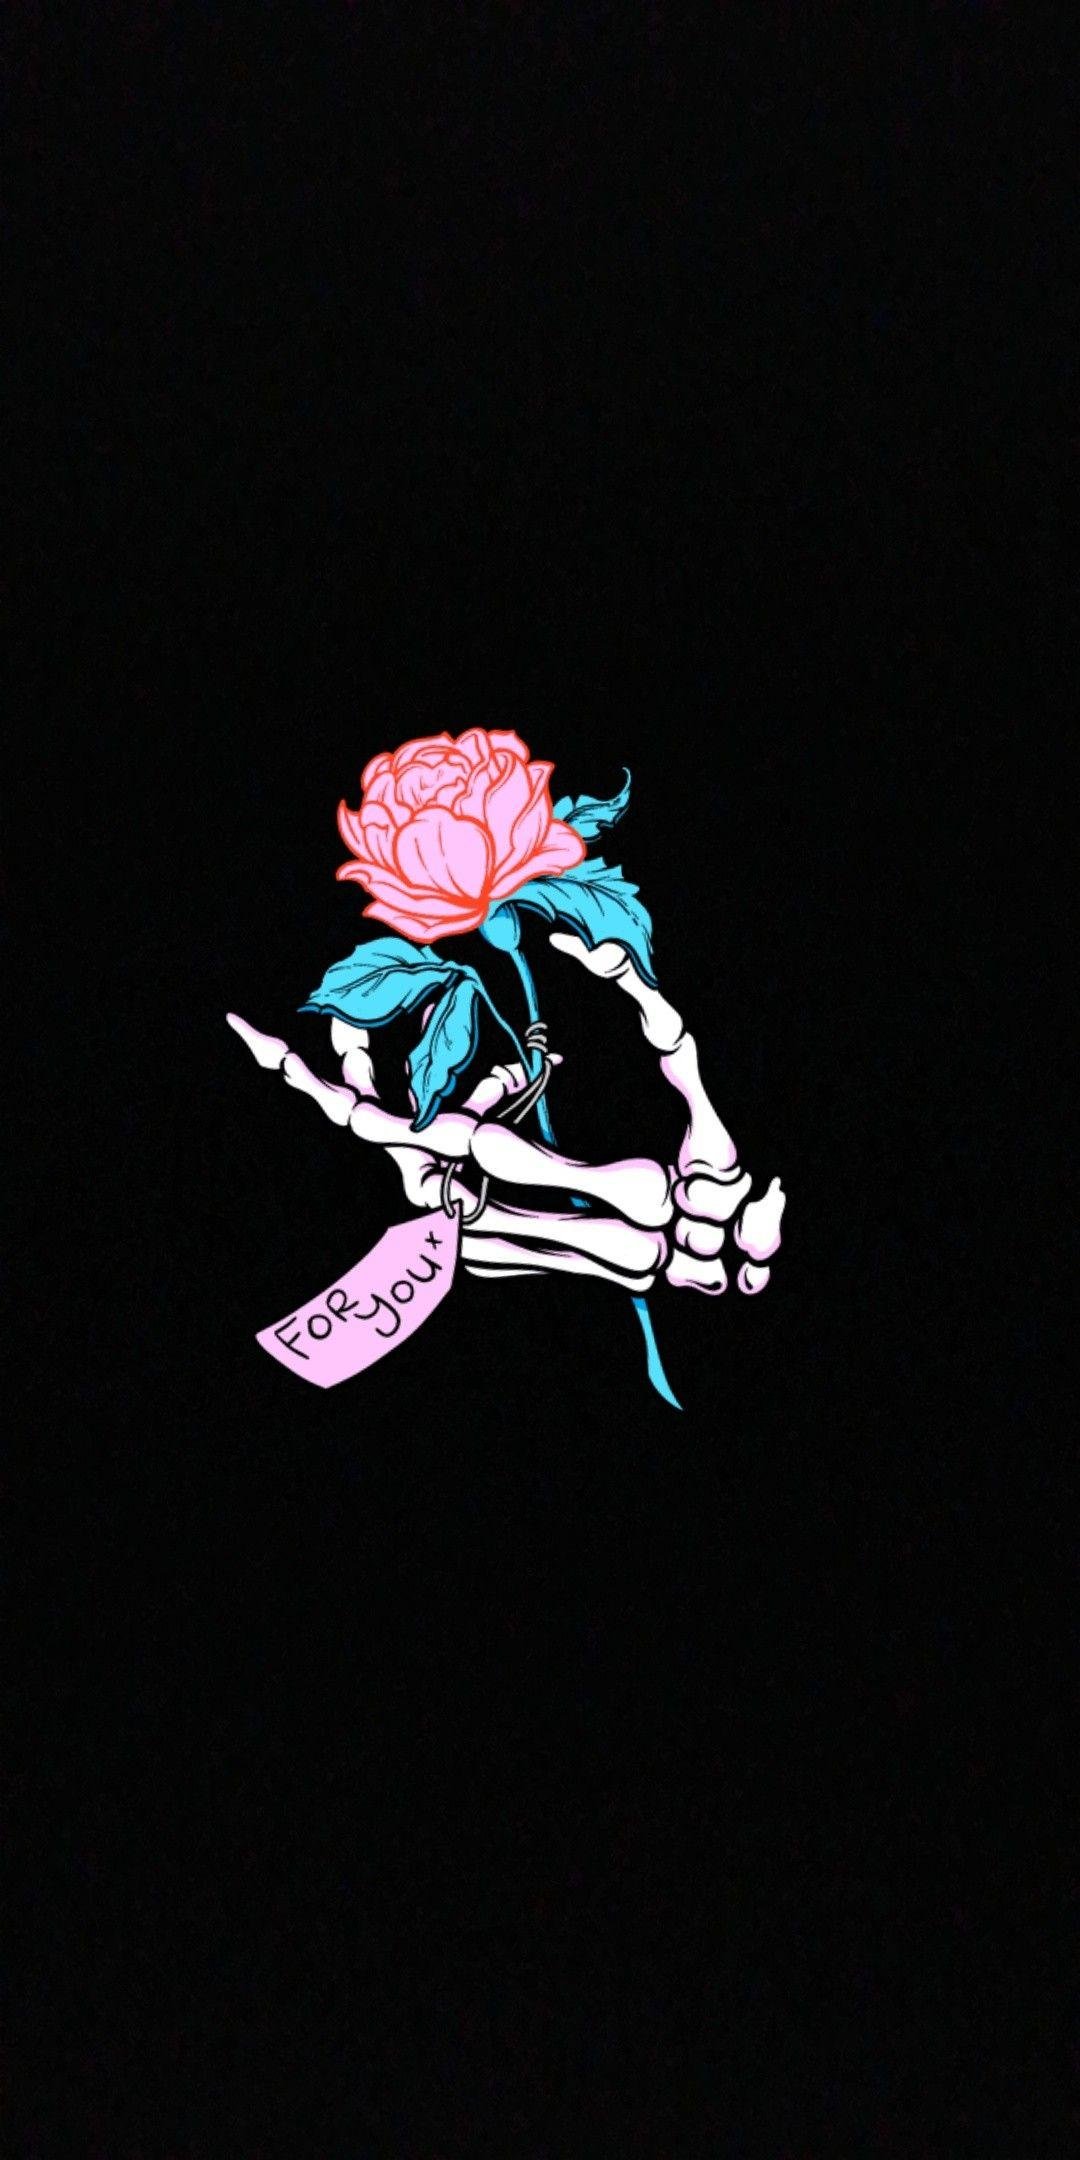 Skeleton Holding Flower